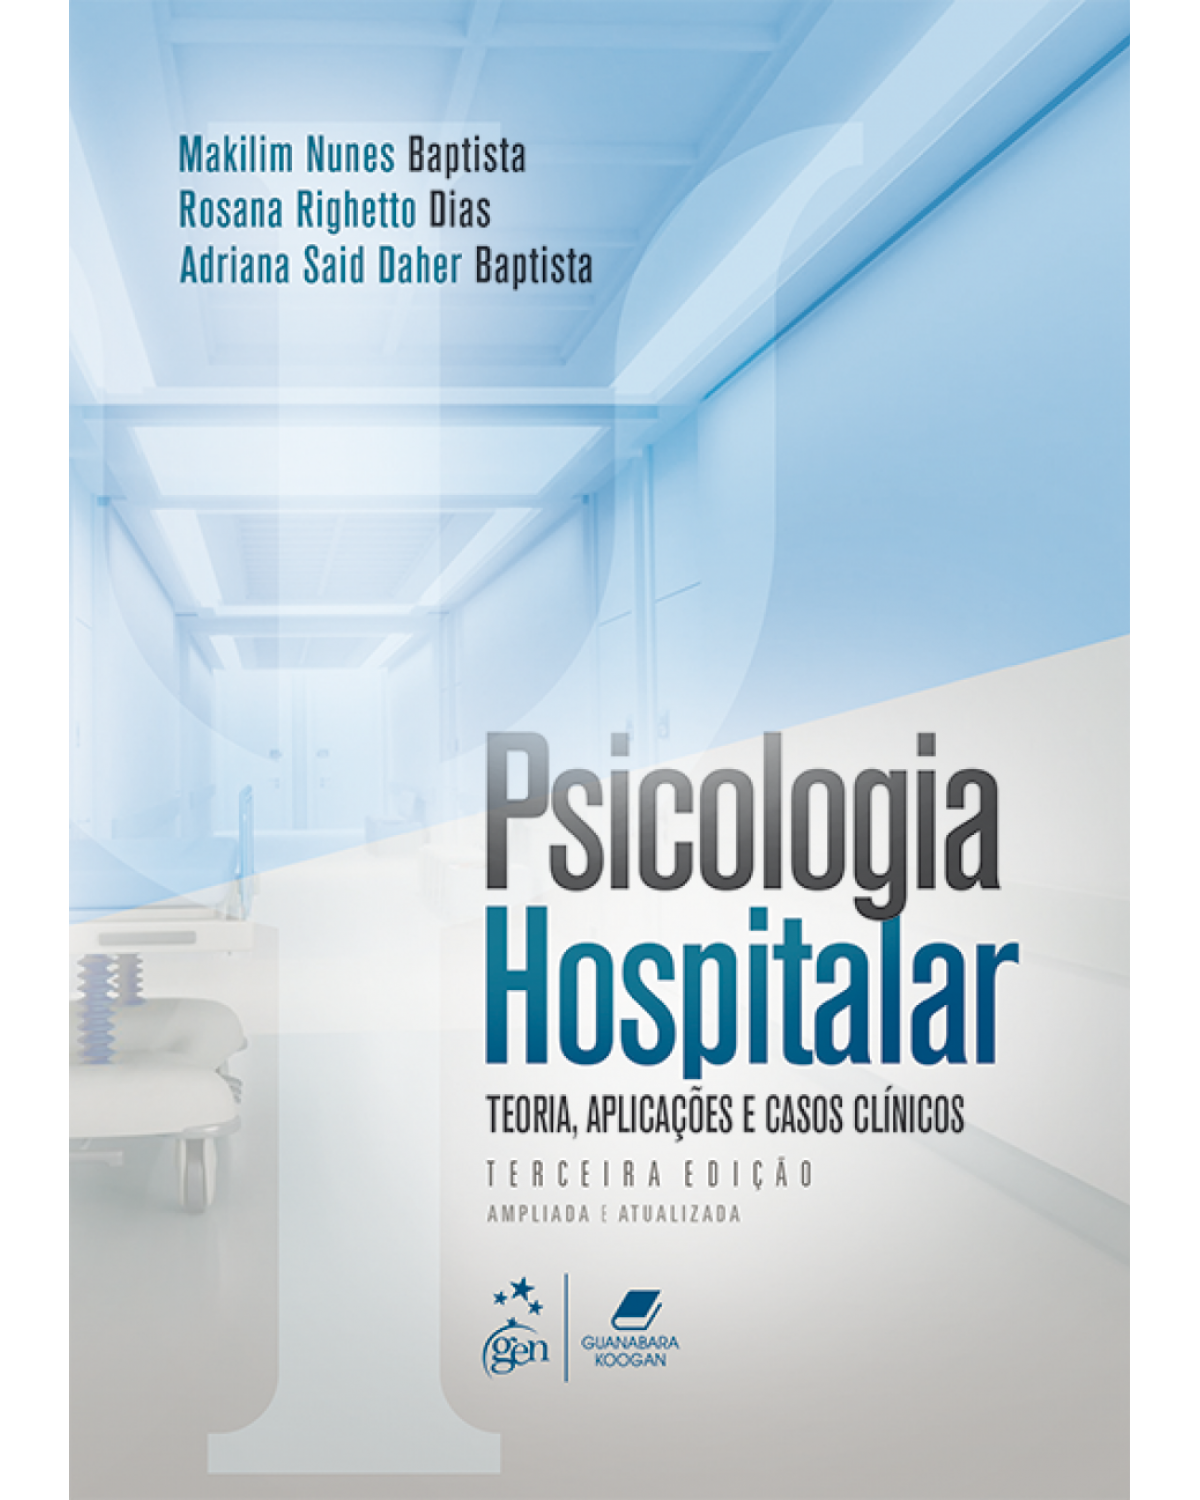 Psicologia hospitalar - teoria, aplicações e casos clínicos - 3ª Edição | 2018